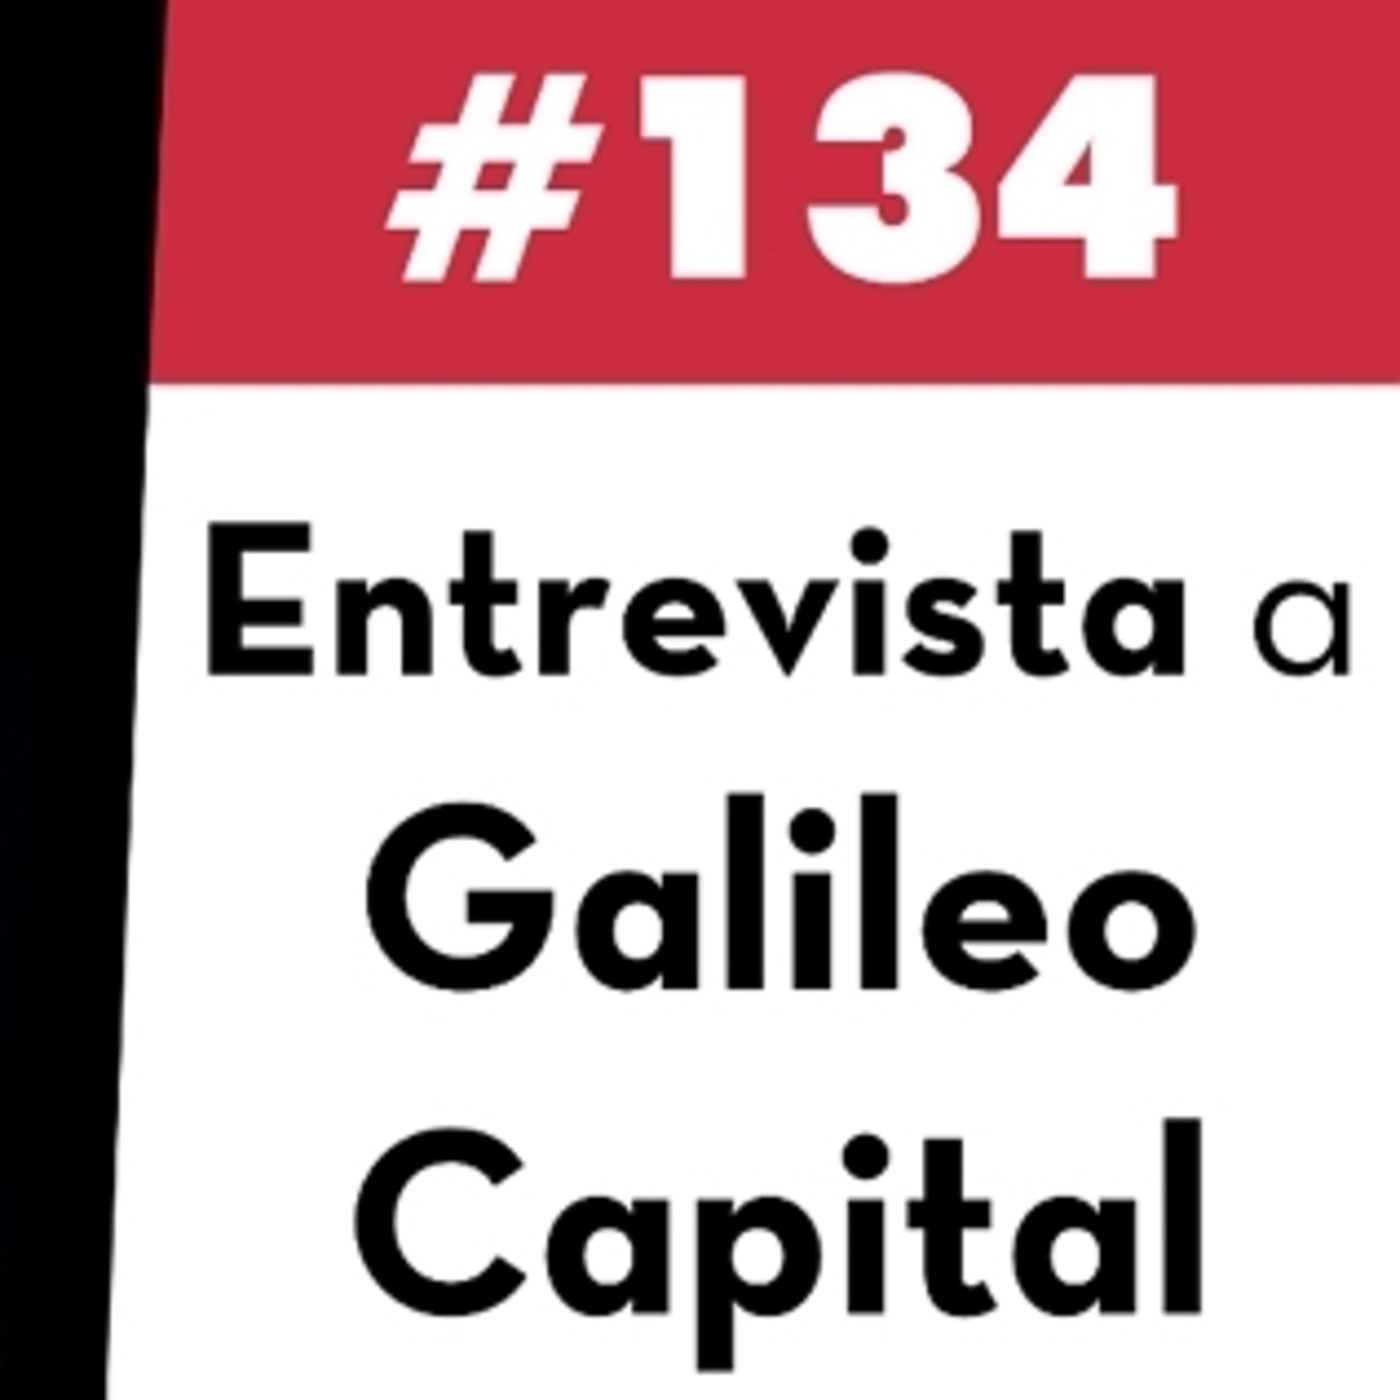 134. Entrevista a Galileo Capital